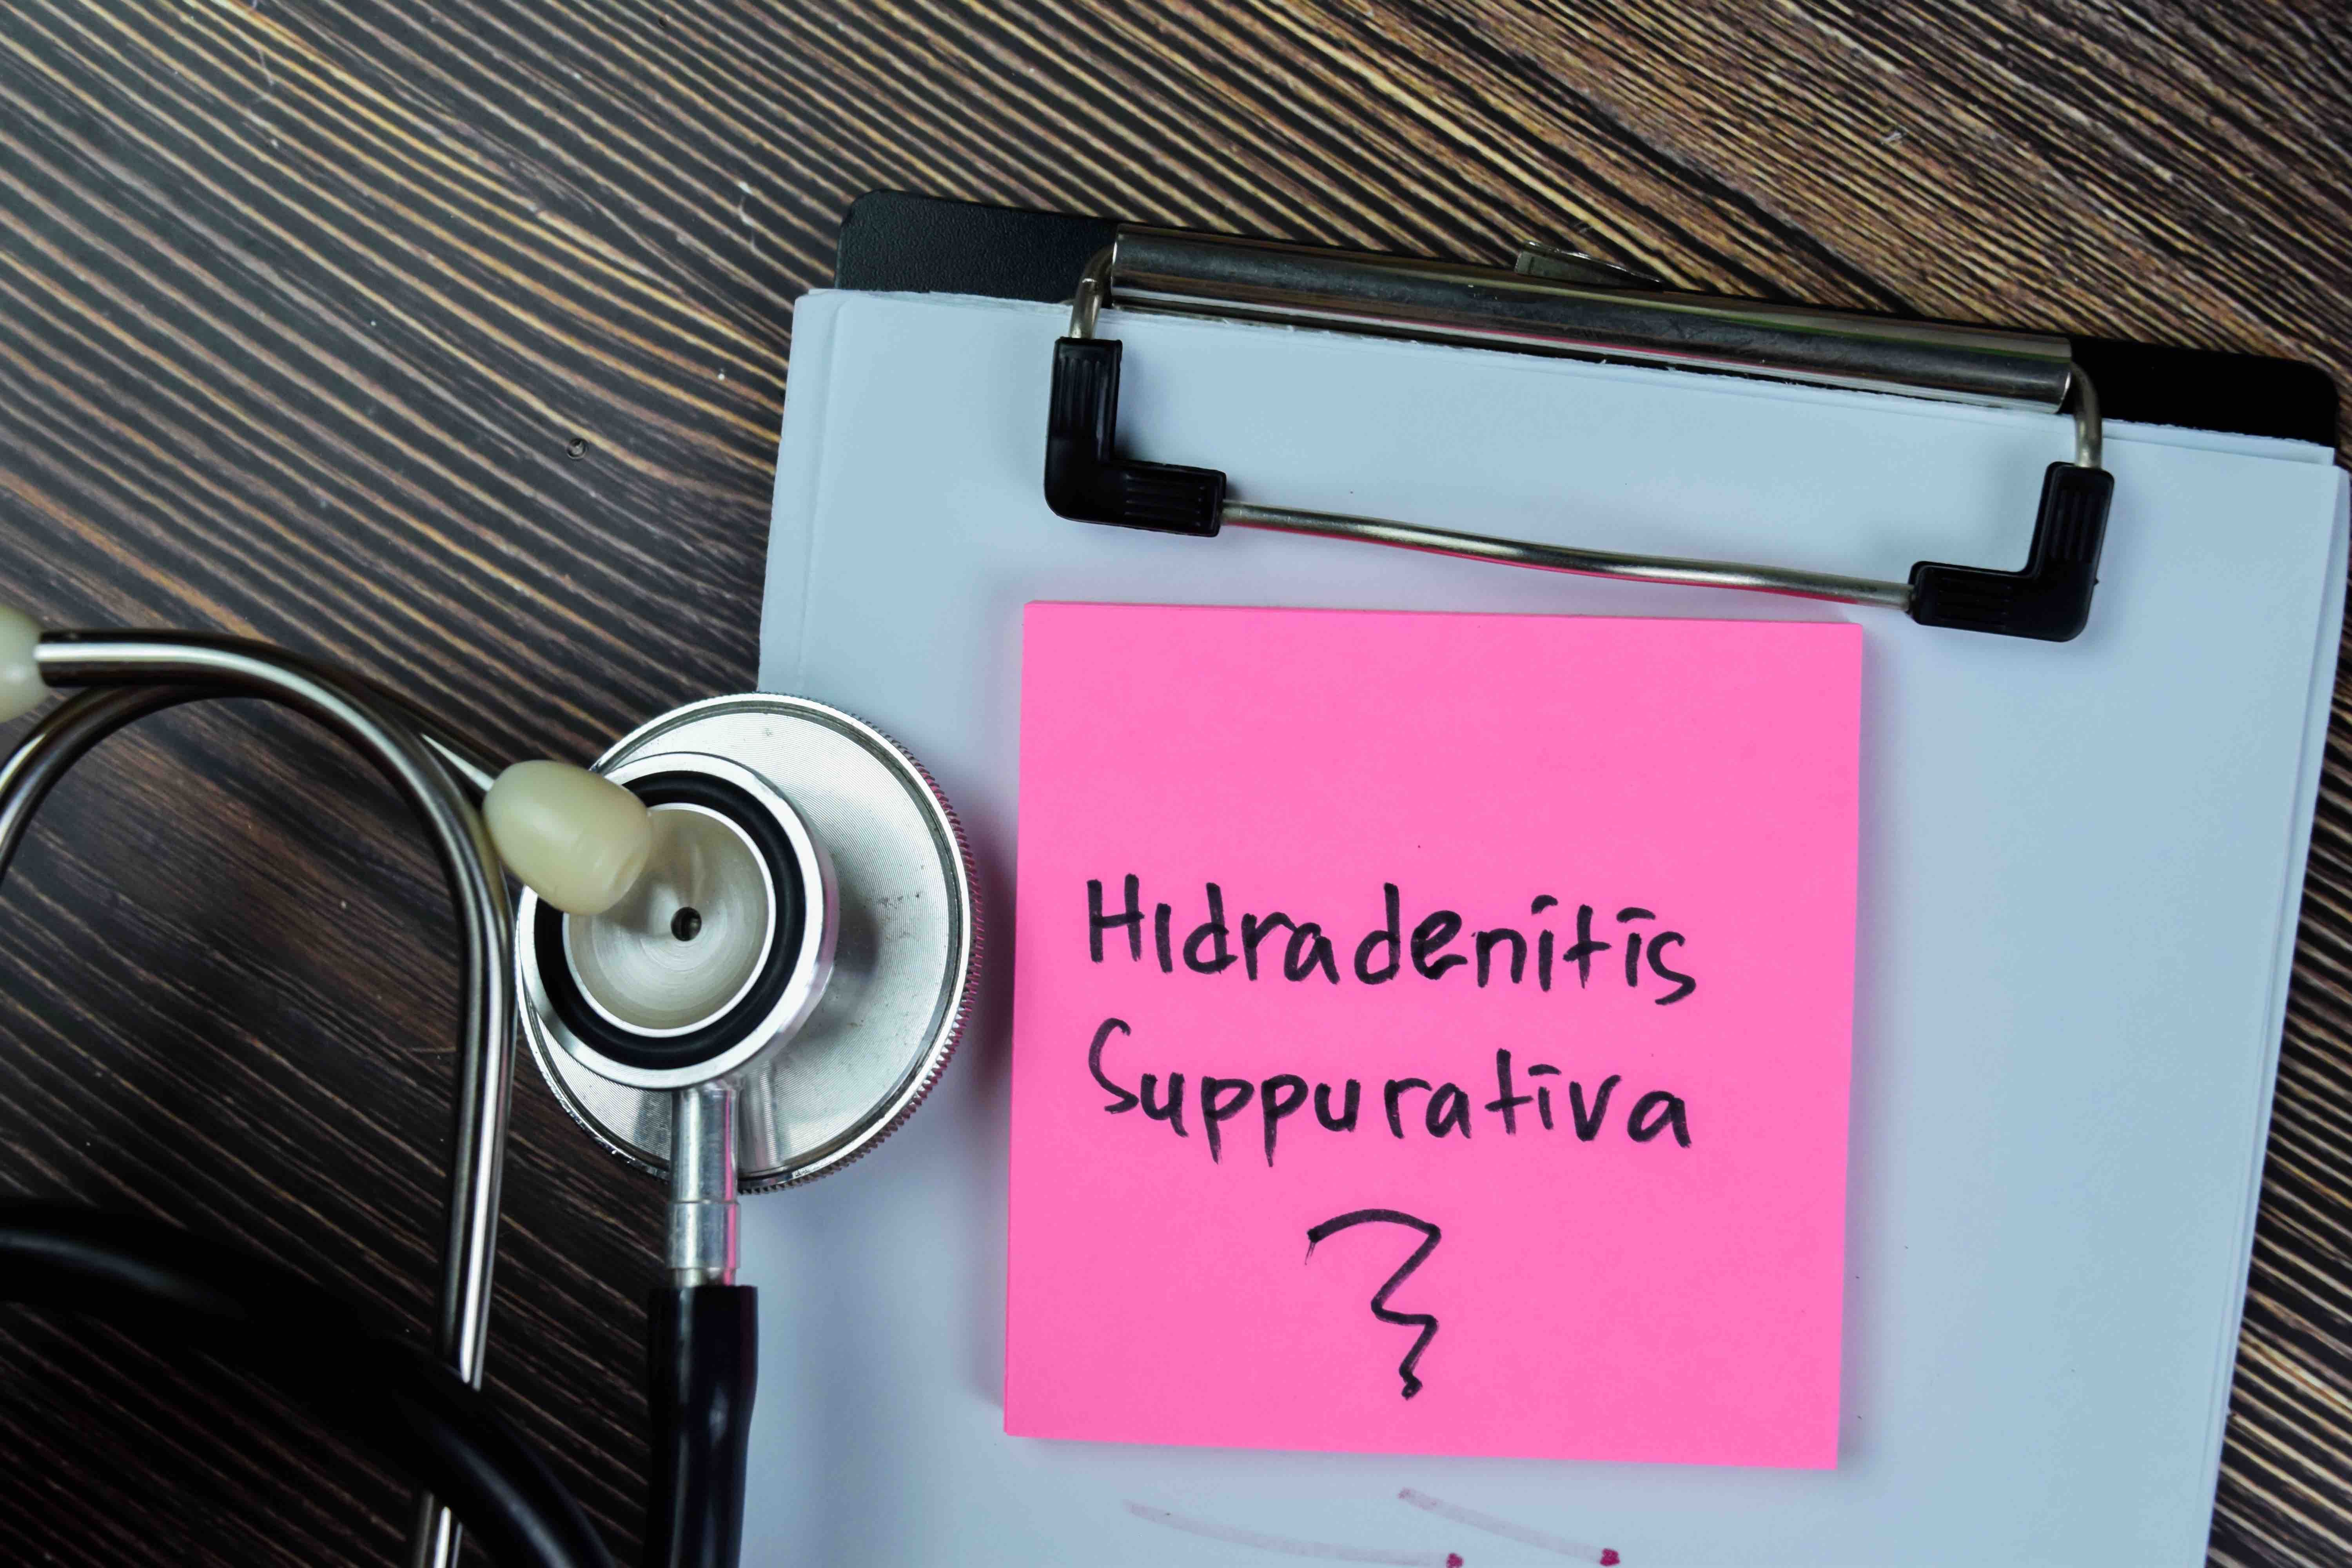 Concept of hidradenitis suppurativa | Image credit: syahrir - stock.adobe.com